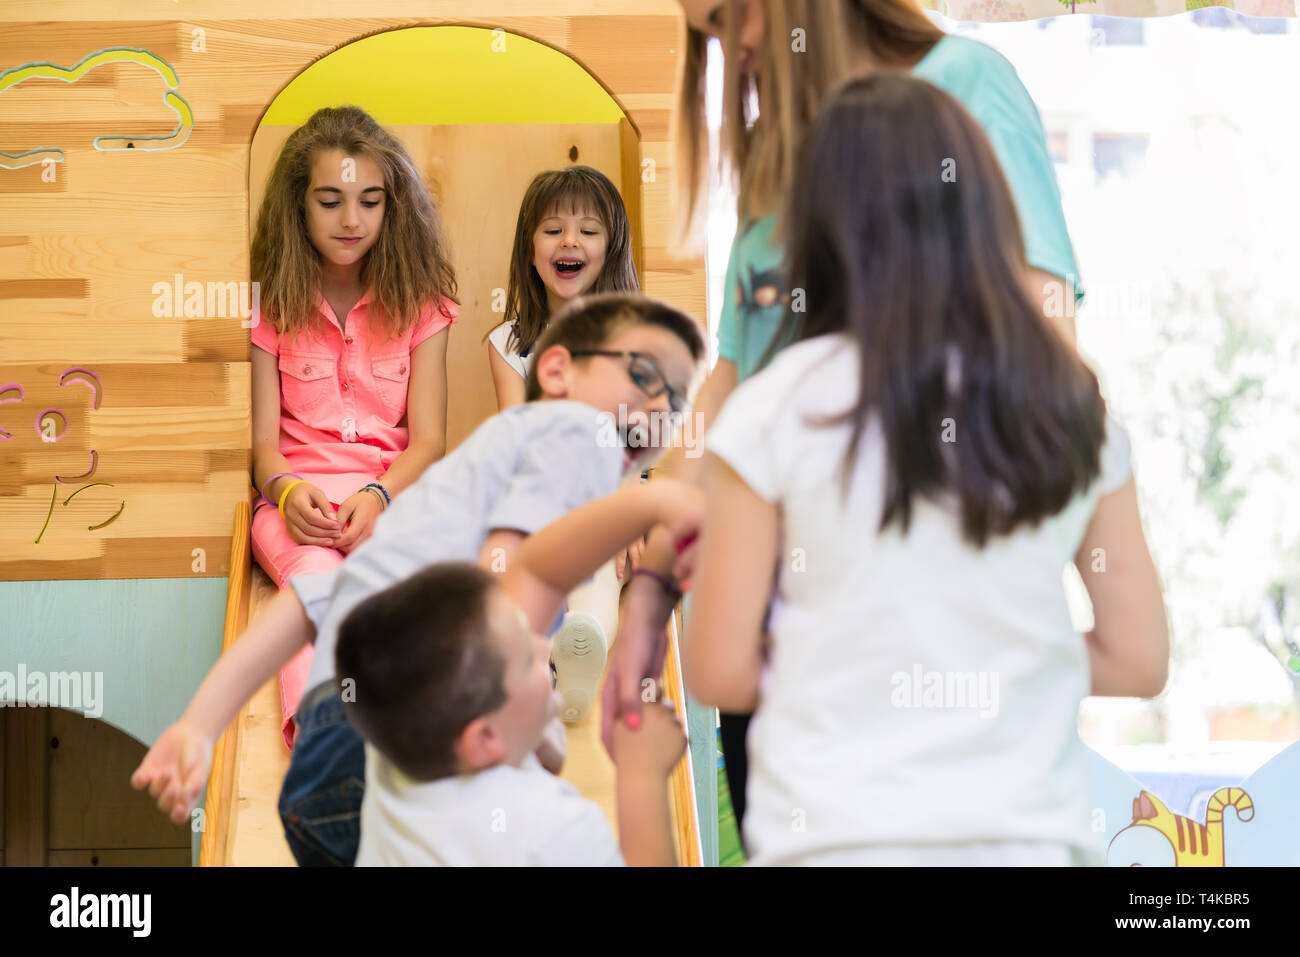 Cute chicas sonrientes durante Juegos vigilados en un moderno jardín de infantes Foto de stock